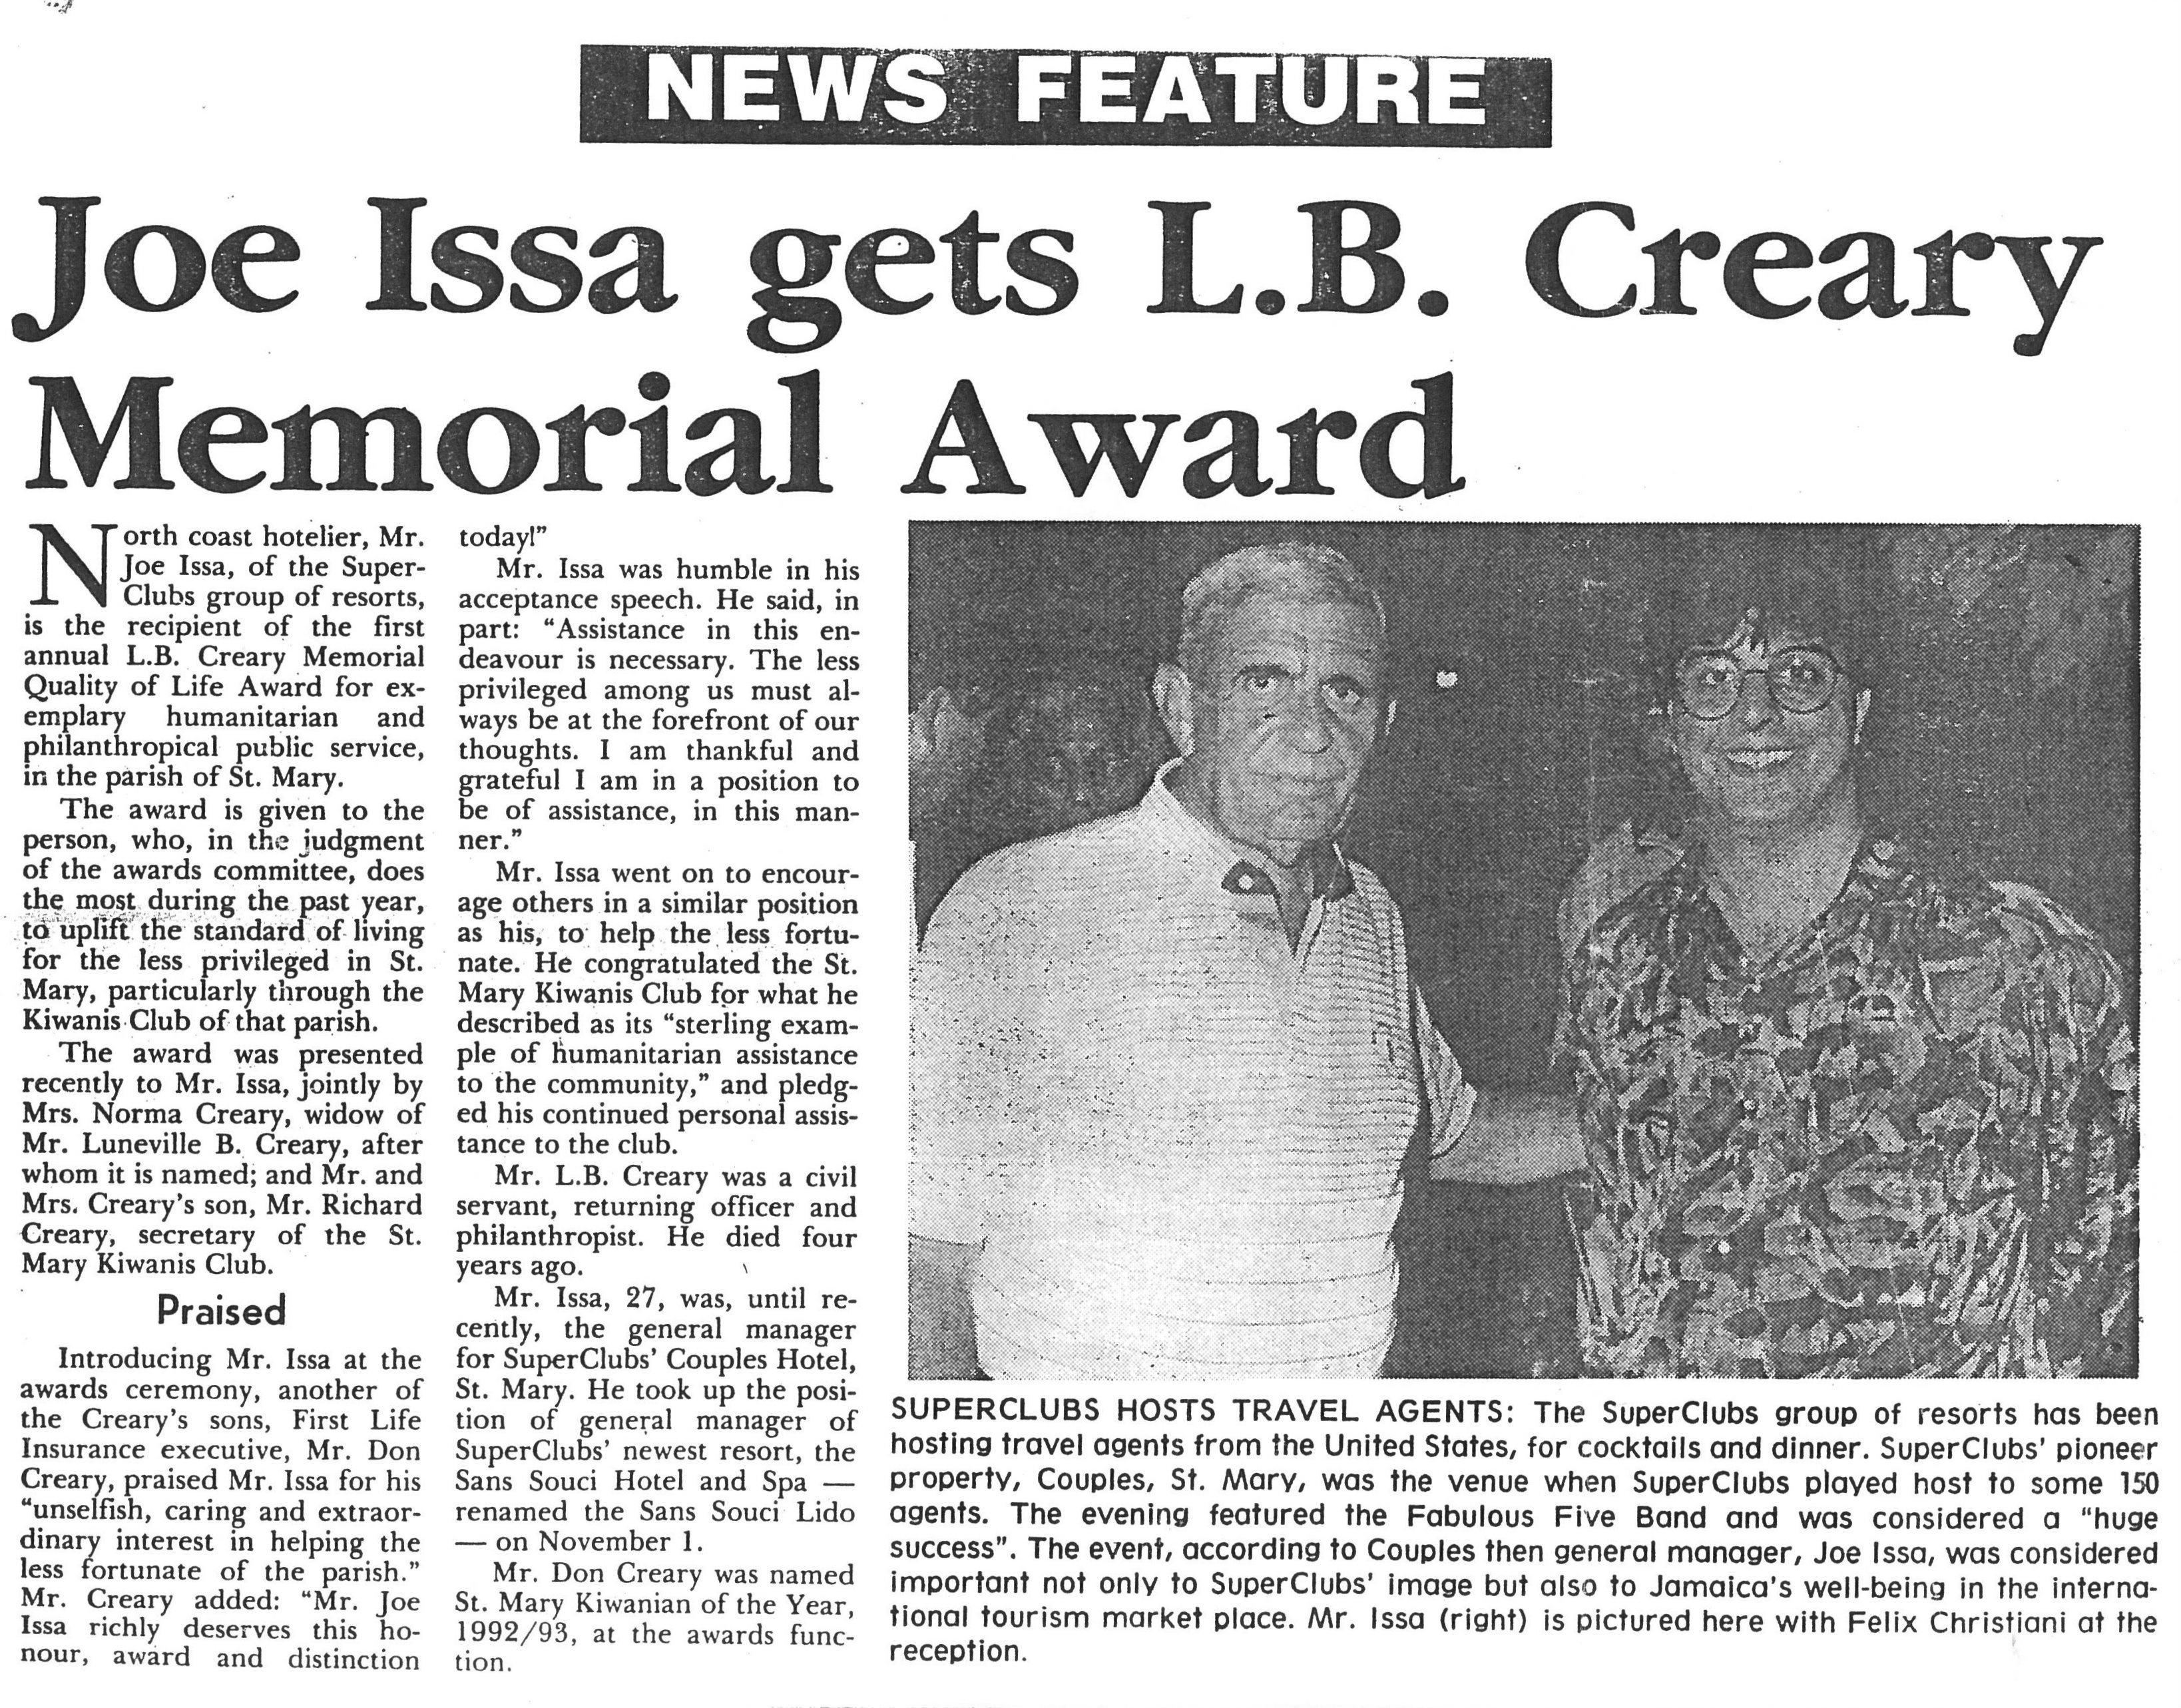 Joe Issa gets L.B. Creary Memorial Award